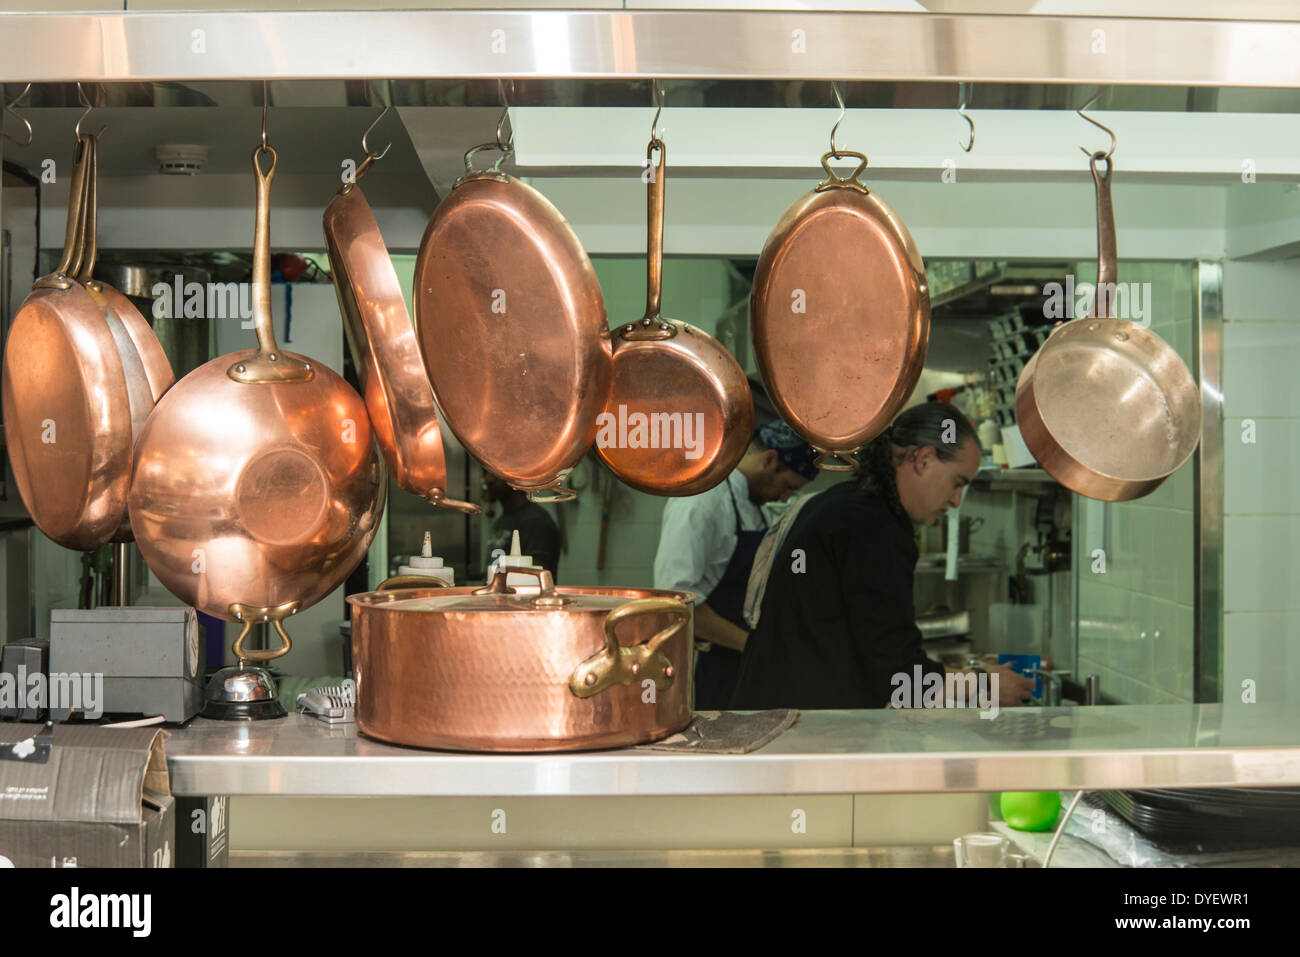 Les casseroles en cuivre dans une cuisine de restaurant Banque D'Images